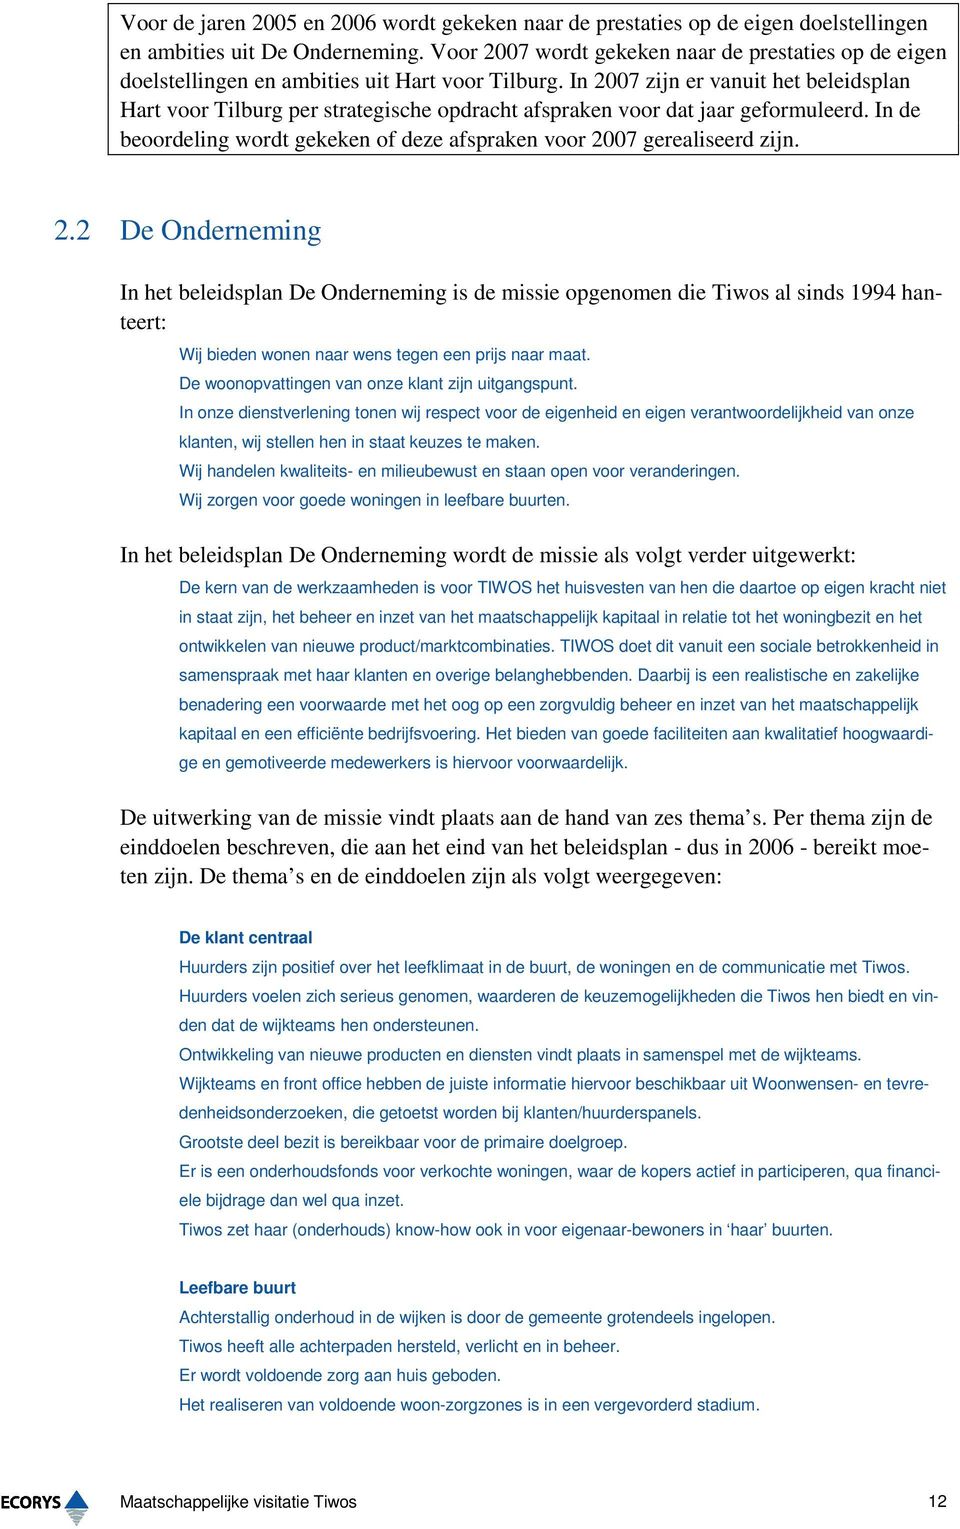 In 2007 zijn er vanuit het beleidsplan Hart voor Tilburg per strategische opdracht afspraken voor dat jaar geformuleerd. In de beoordeling wordt gekeken of deze afspraken voor 2007 gerealiseerd zijn.